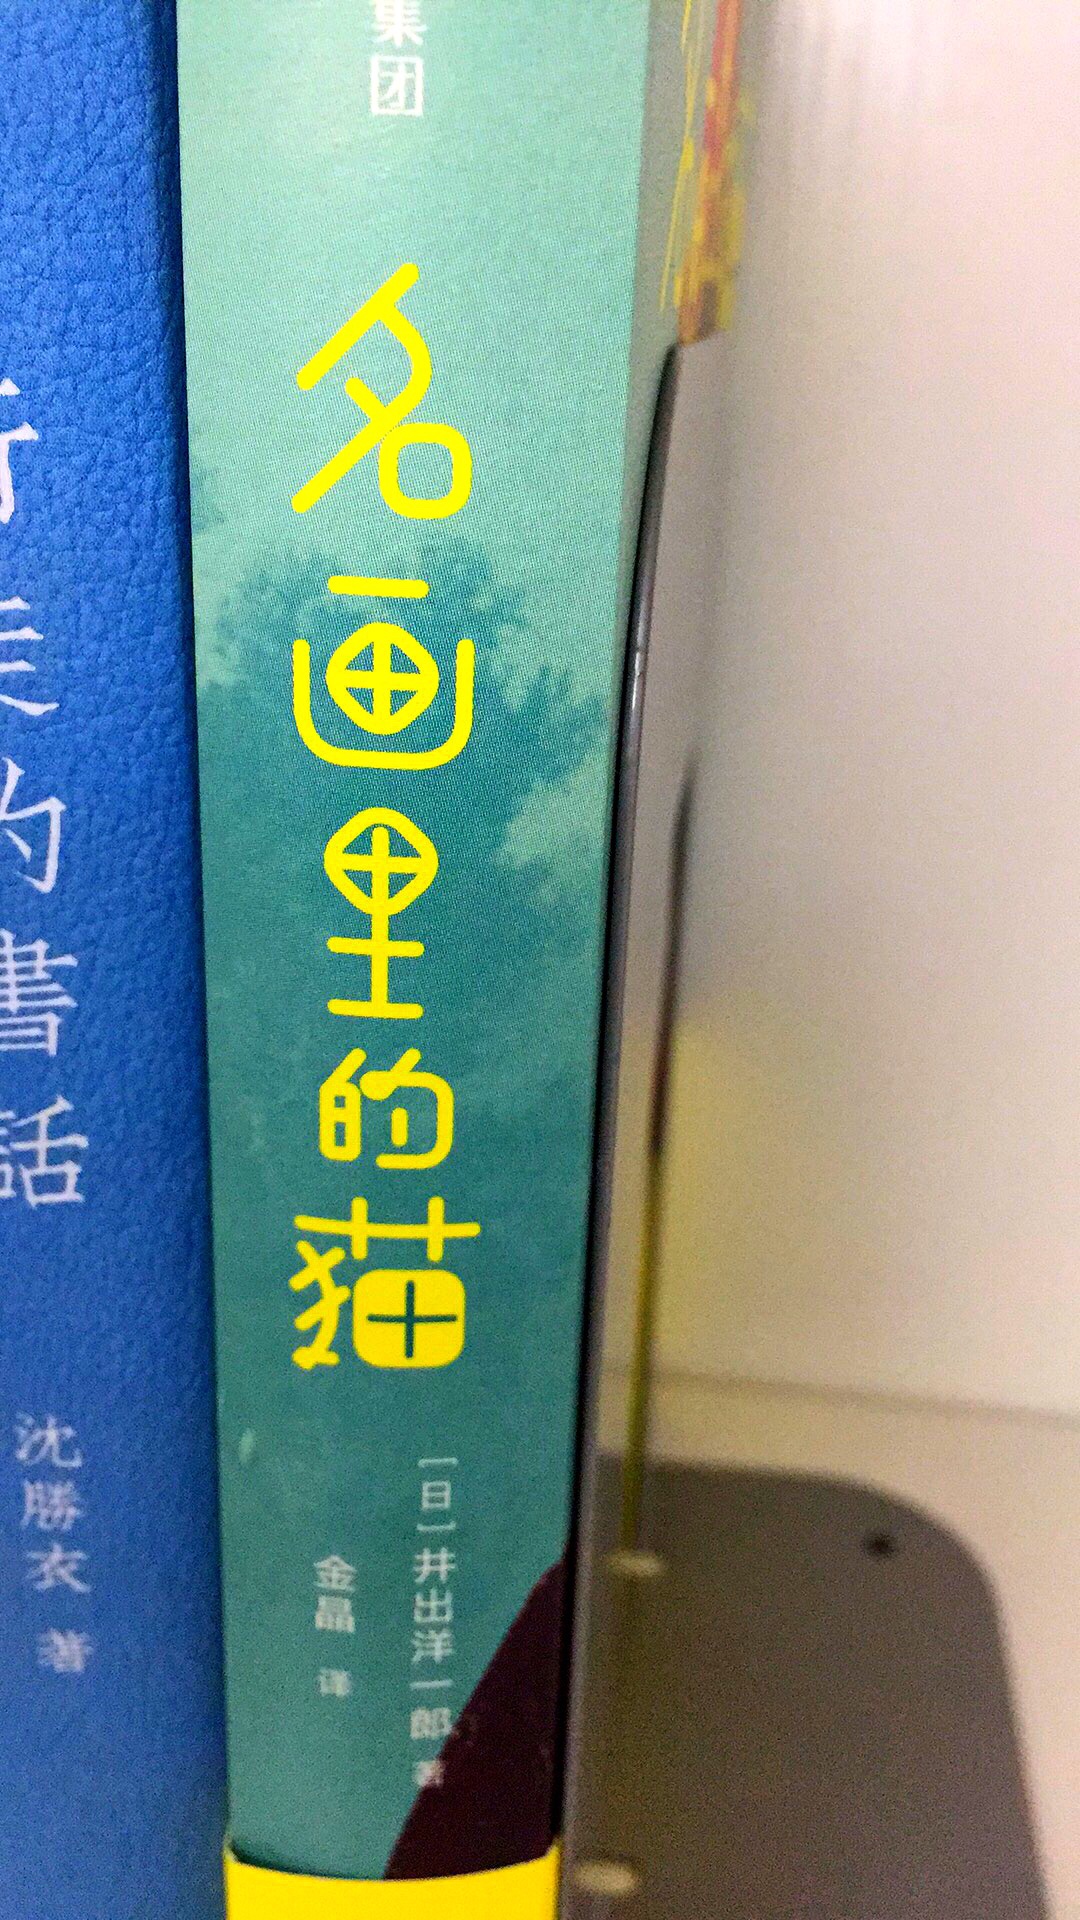 无意中在北京三联三里屯关注的一本书，等待着的活动买入，还算划算，有关艺术作品中猫形象的书，喜欢的。